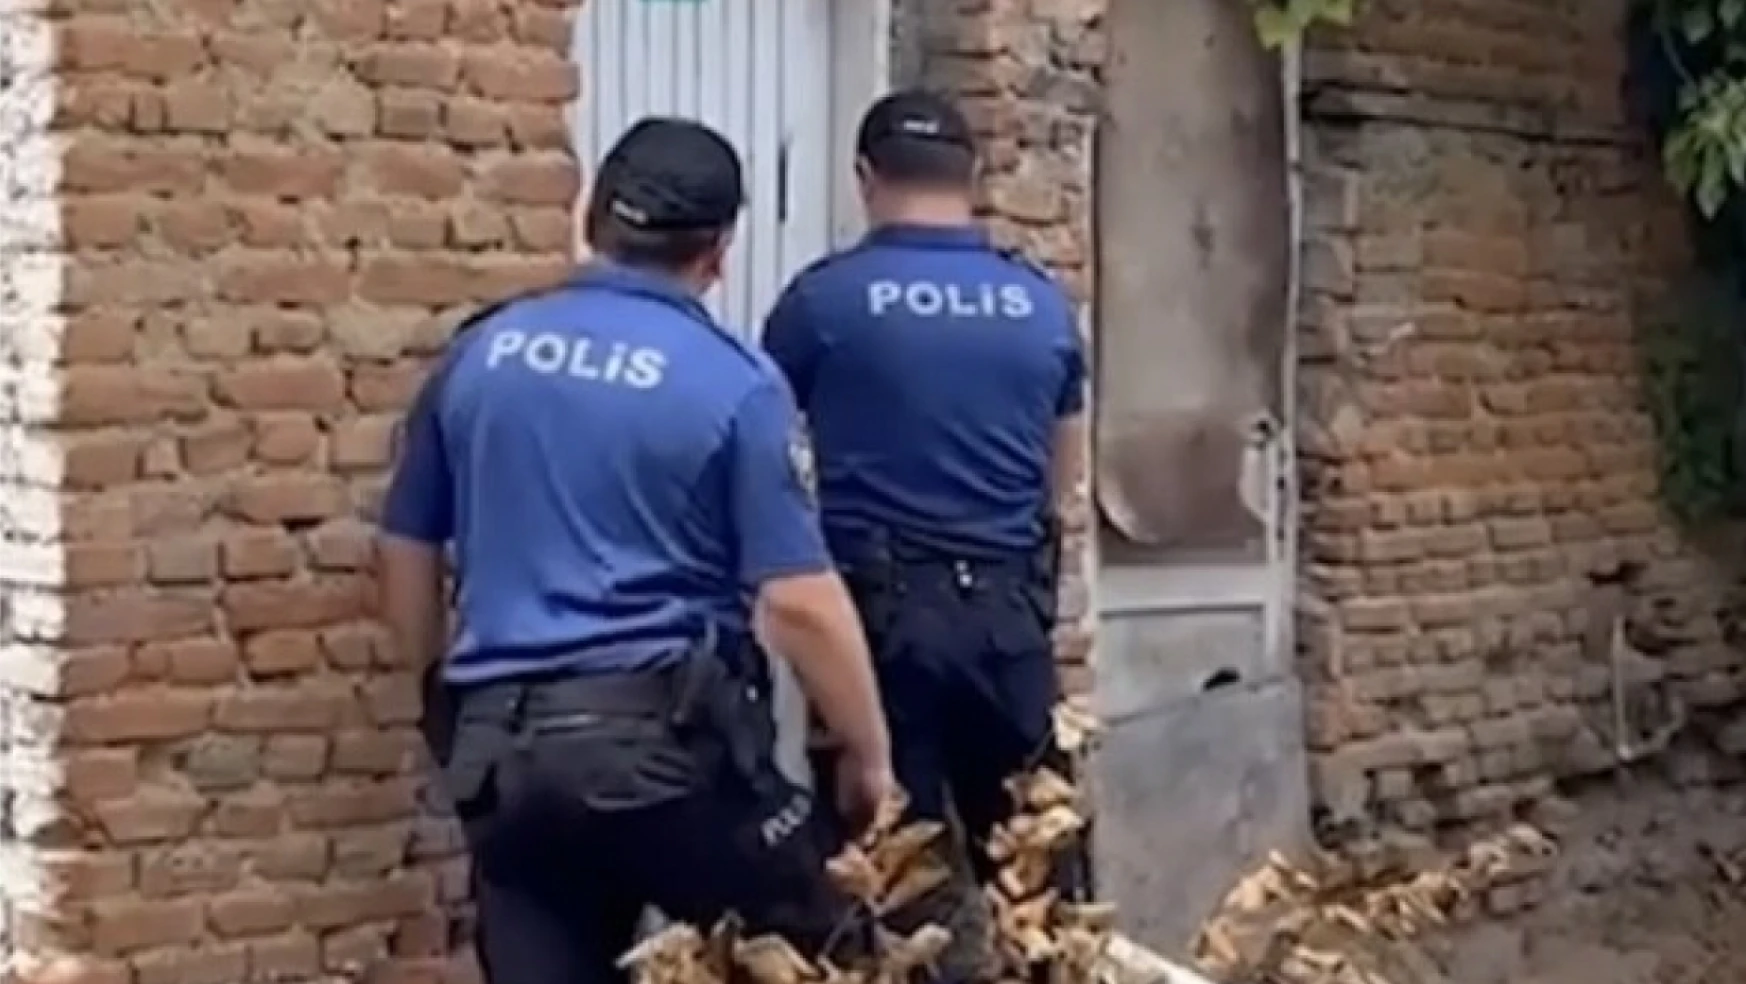 Sinop polisi okul çevrelerindeki denetimleri sıklaştırdı